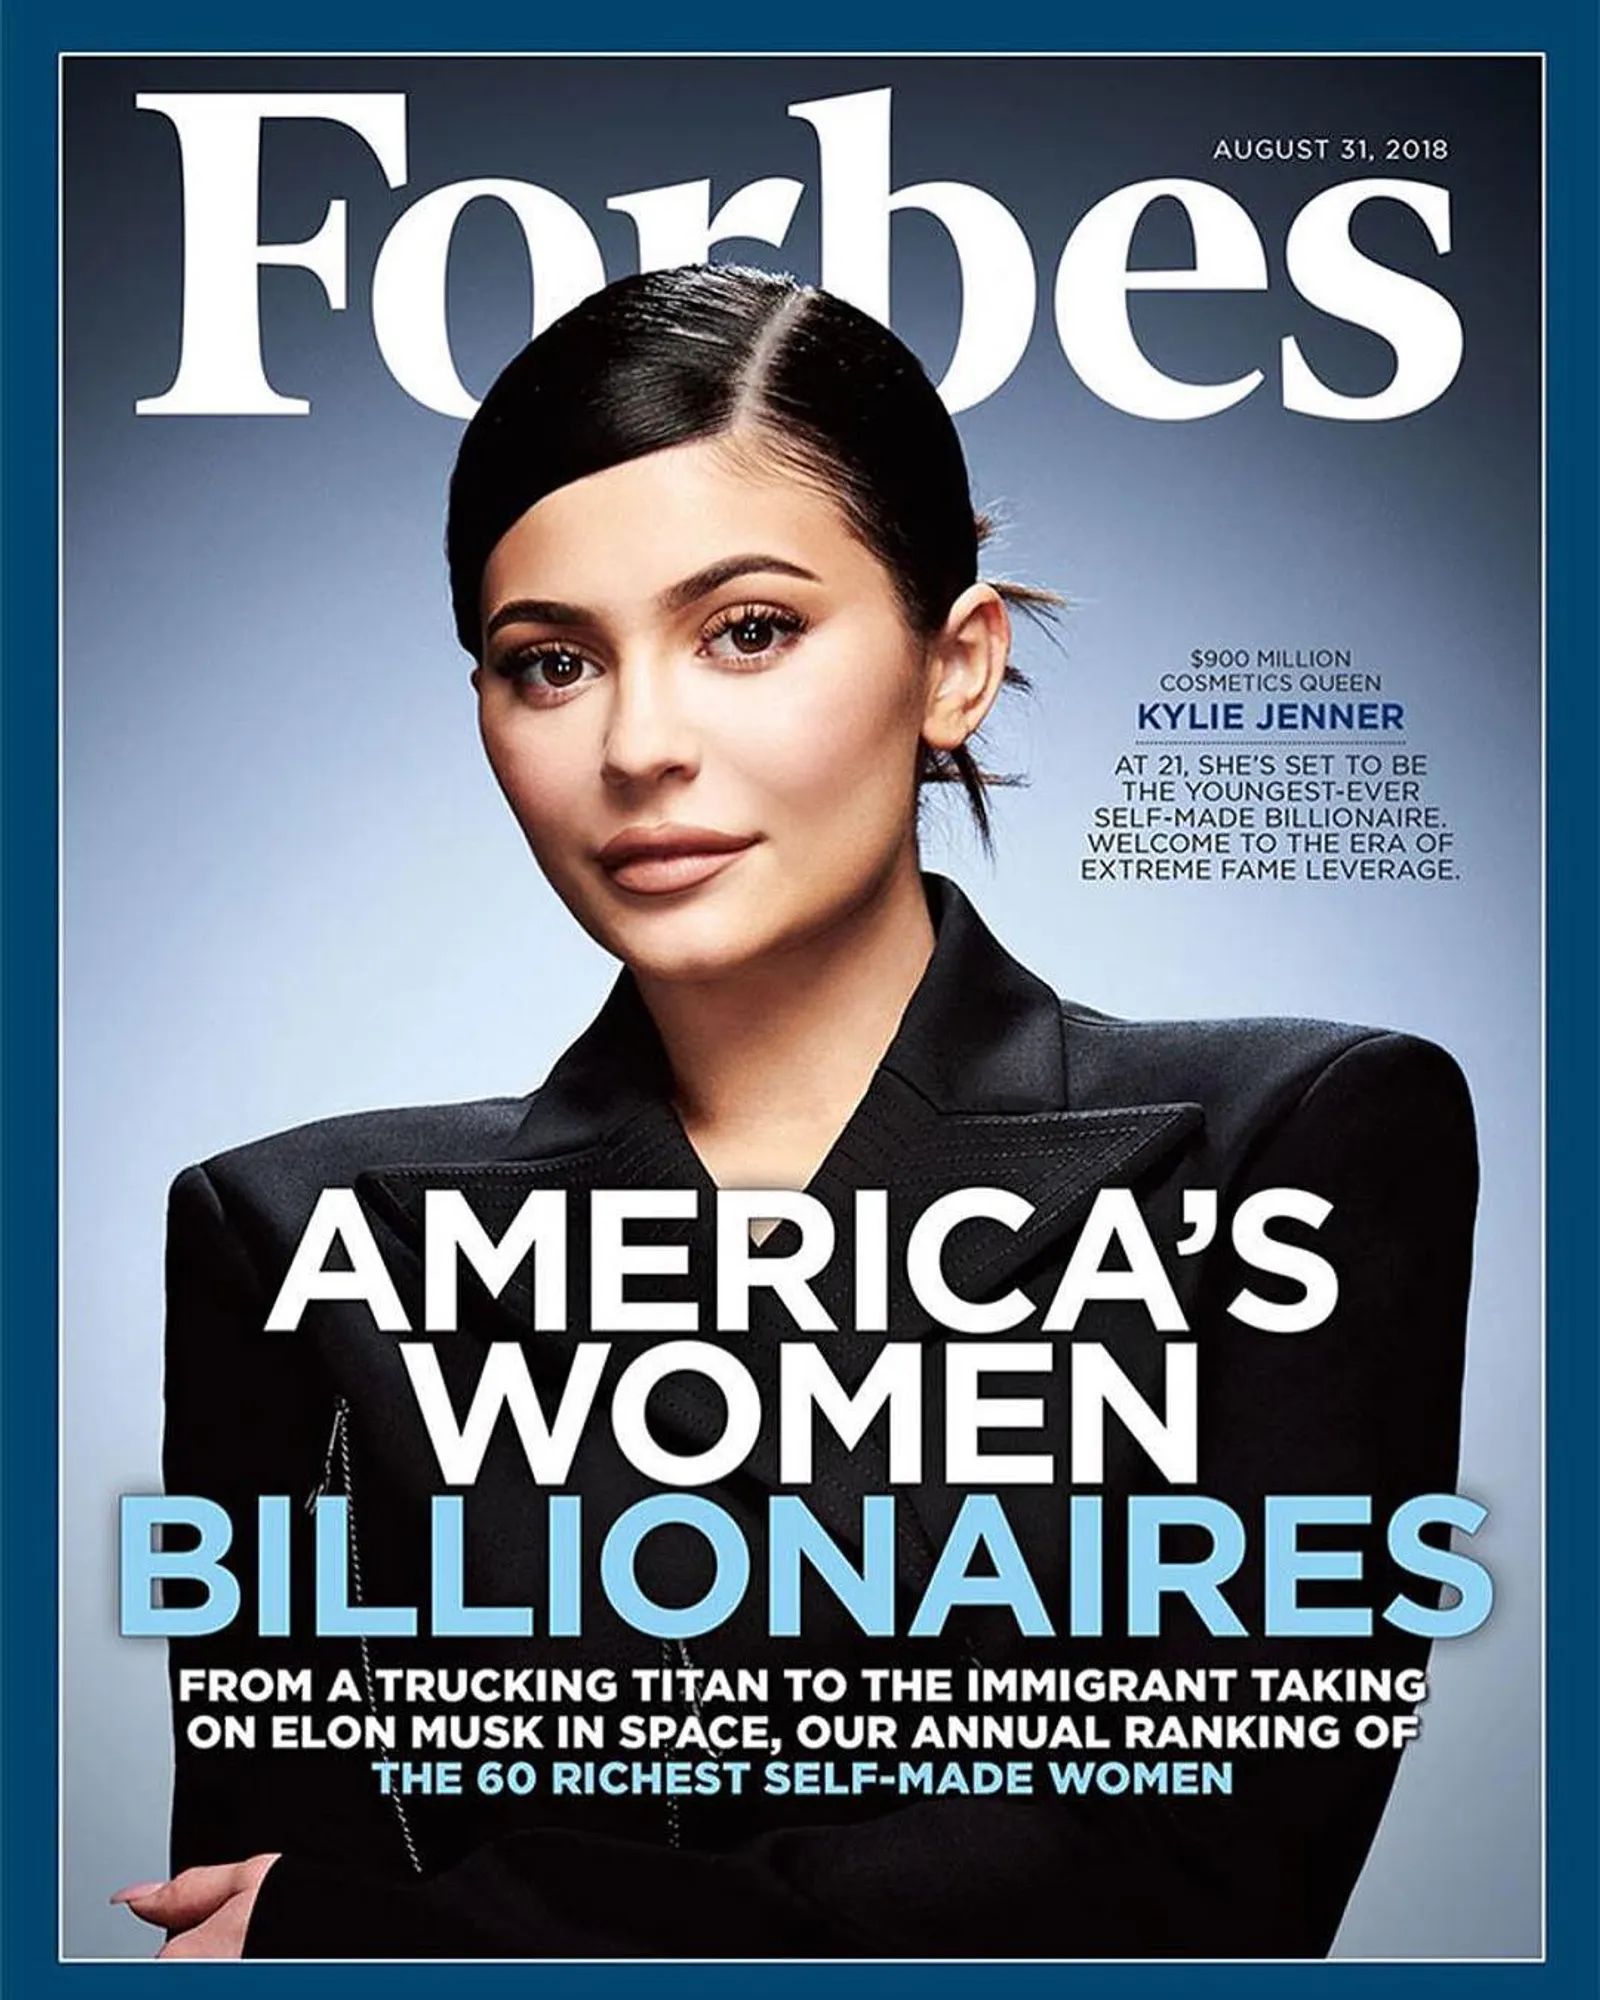 Manipulasi Jumlah Kekayaan, Forbes Cabut Gelar Miliarder Kylie Jenner?